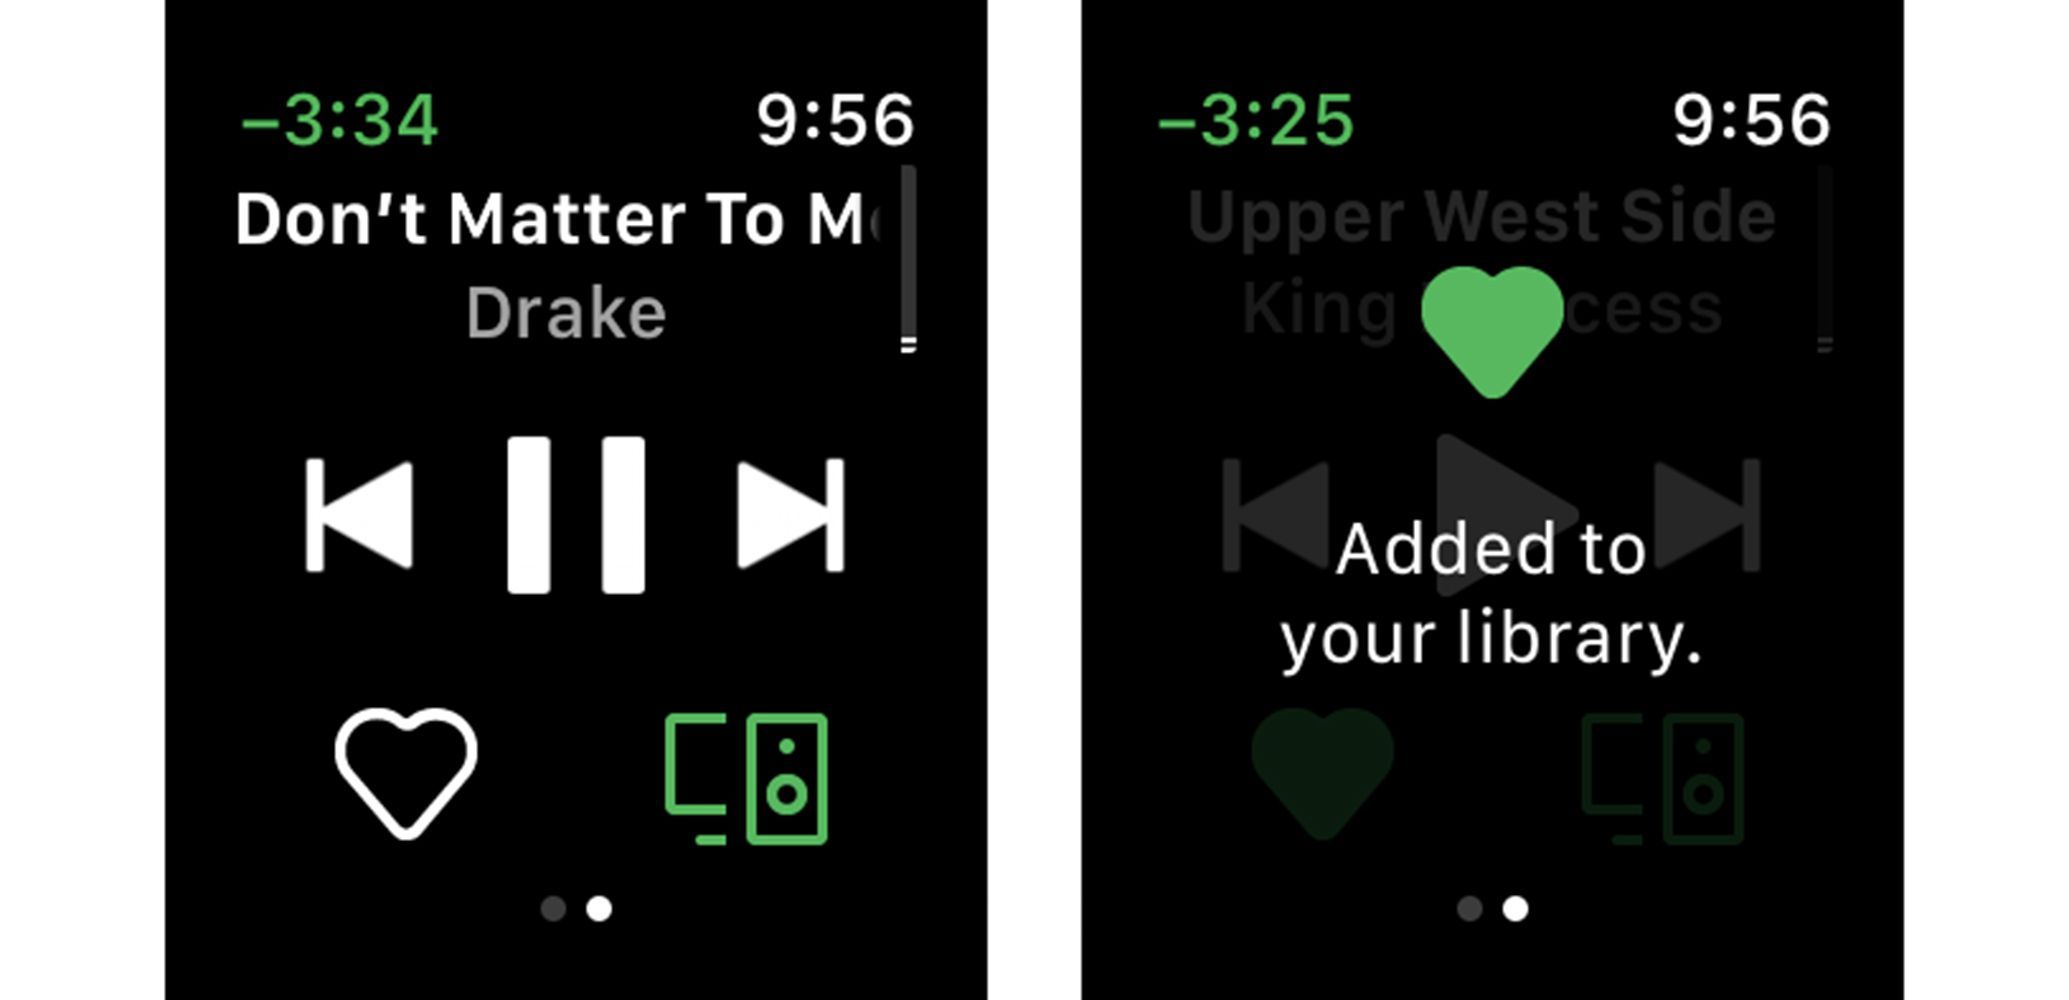 Скриншоты из Spotify Apple Watch, показывающие, как добавить песню в библиотеку.